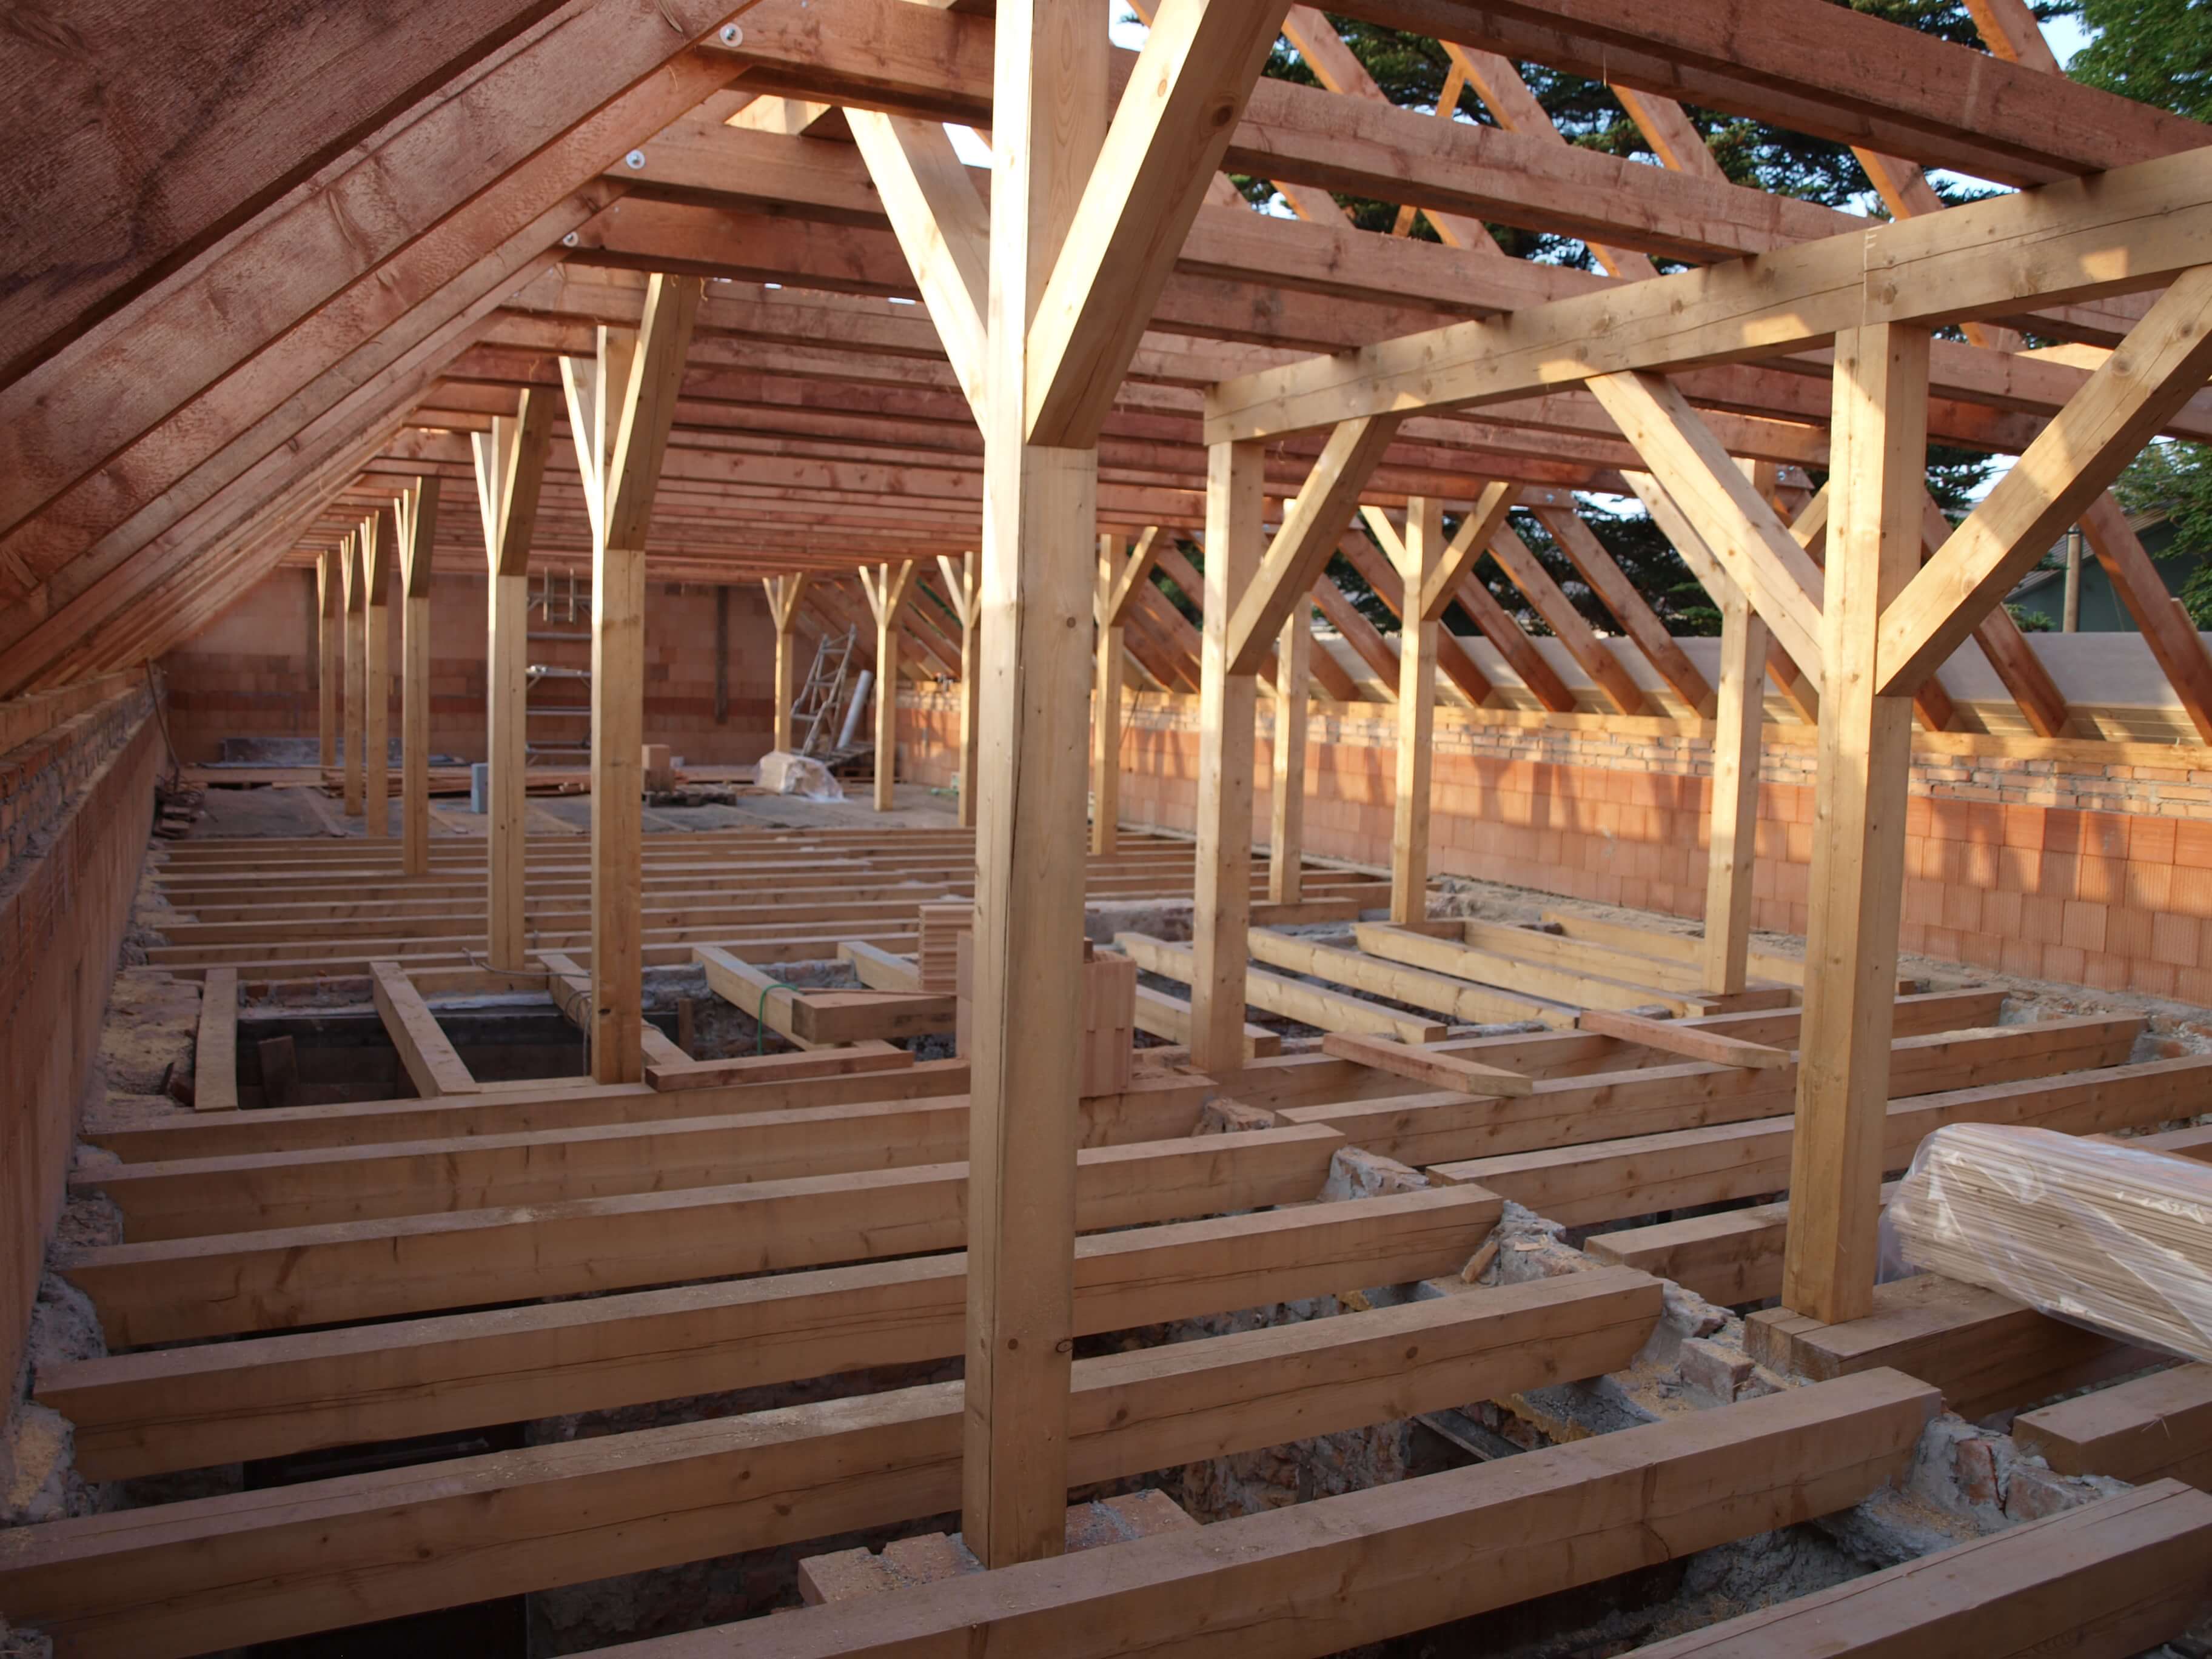 Drewno impregnowane - podstawa wysokiej jakości dachu